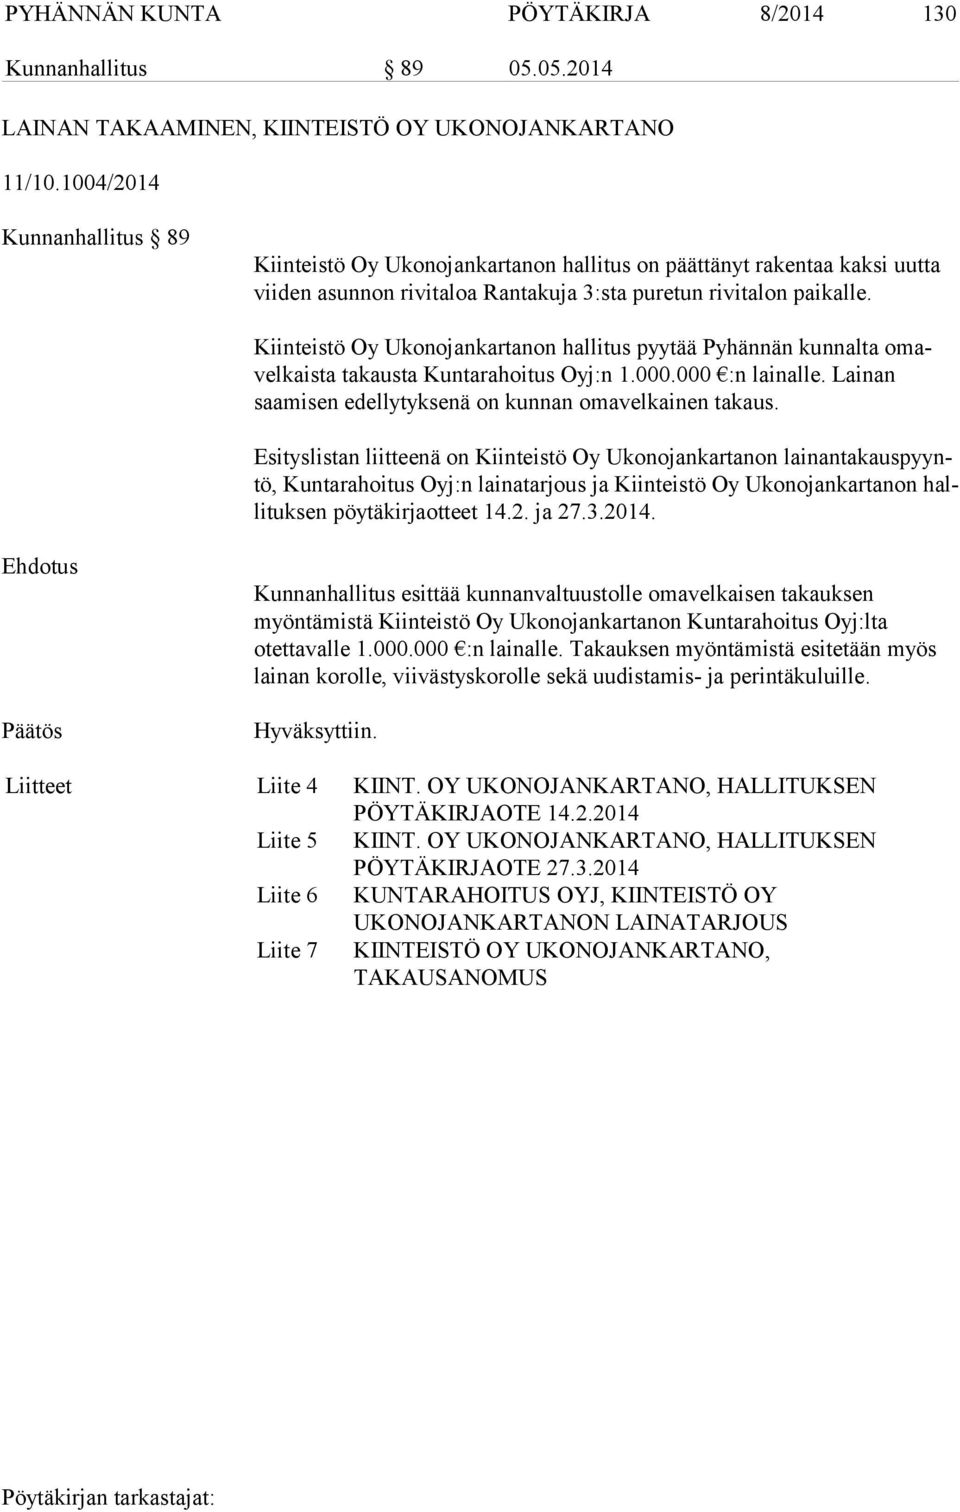 Kiinteistö Oy Ukonojankartanon hallitus pyytää Pyhännän kunnalta omavel kais ta takausta Kuntarahoitus Oyj:n 1.000.000 :n lainalle. Lainan saamisen edellytyksenä on kunnan omavelkainen takaus.